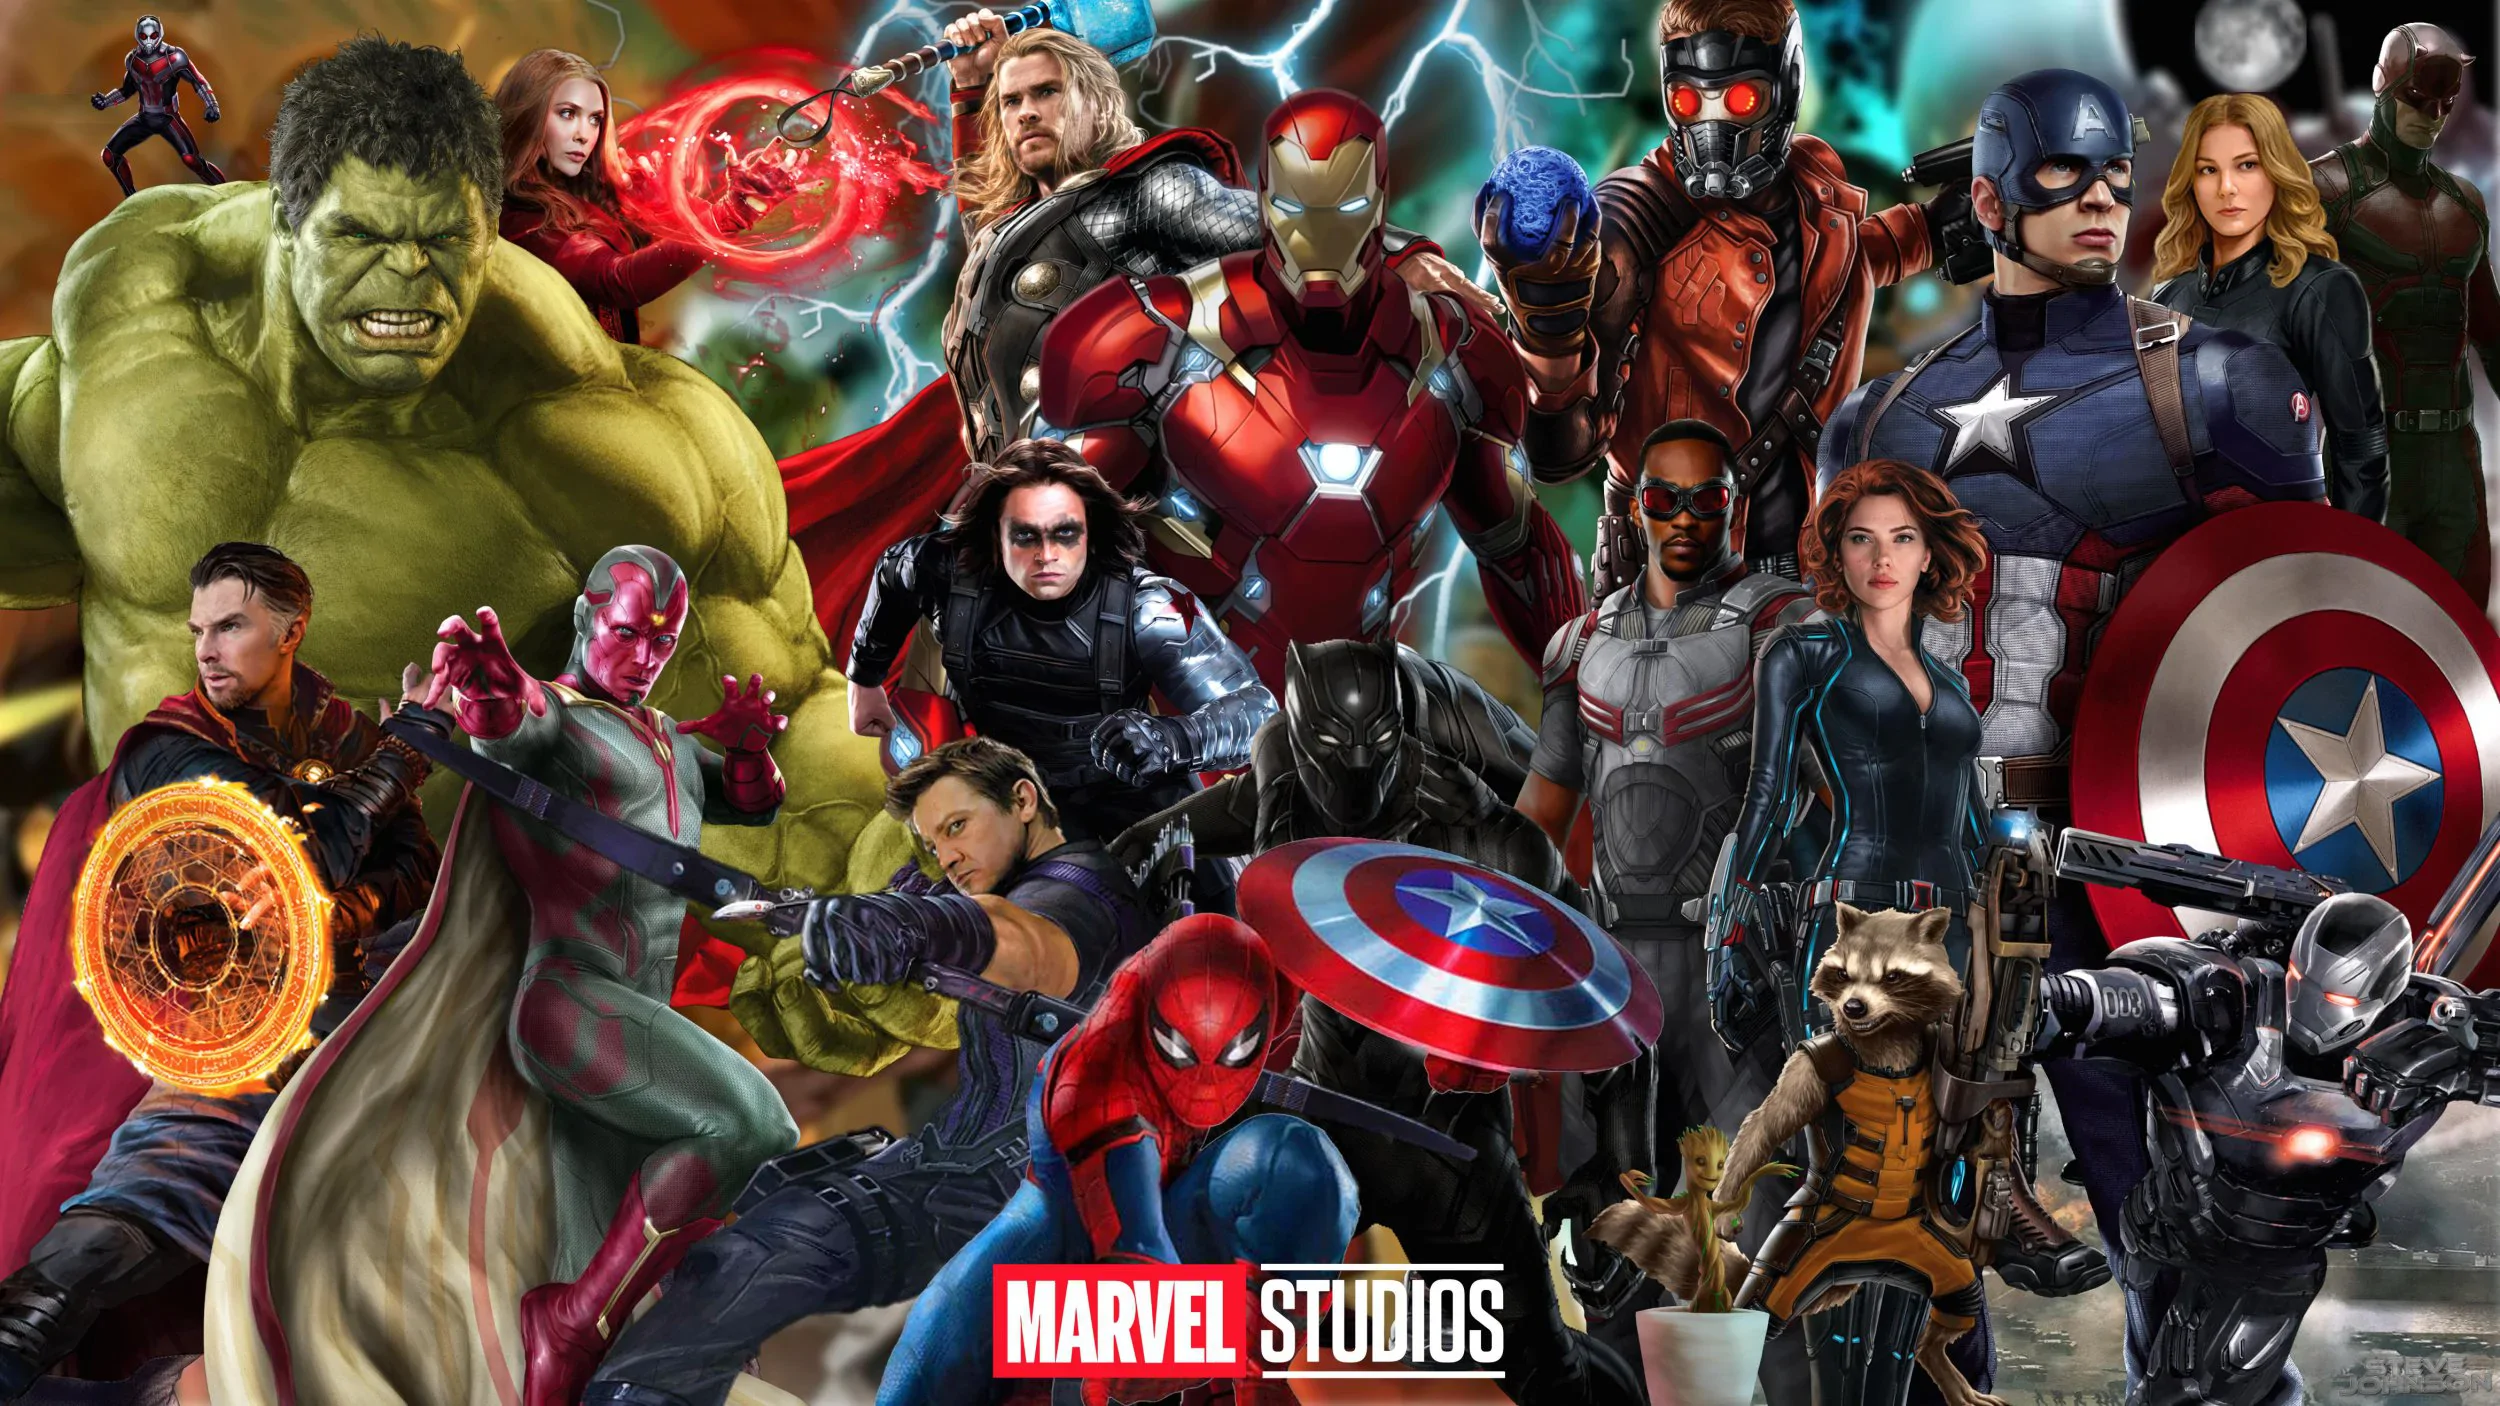 Marvel redukuje częstotliwość publikacji swoich produkcji. Bob Iger ogłasza zmiany